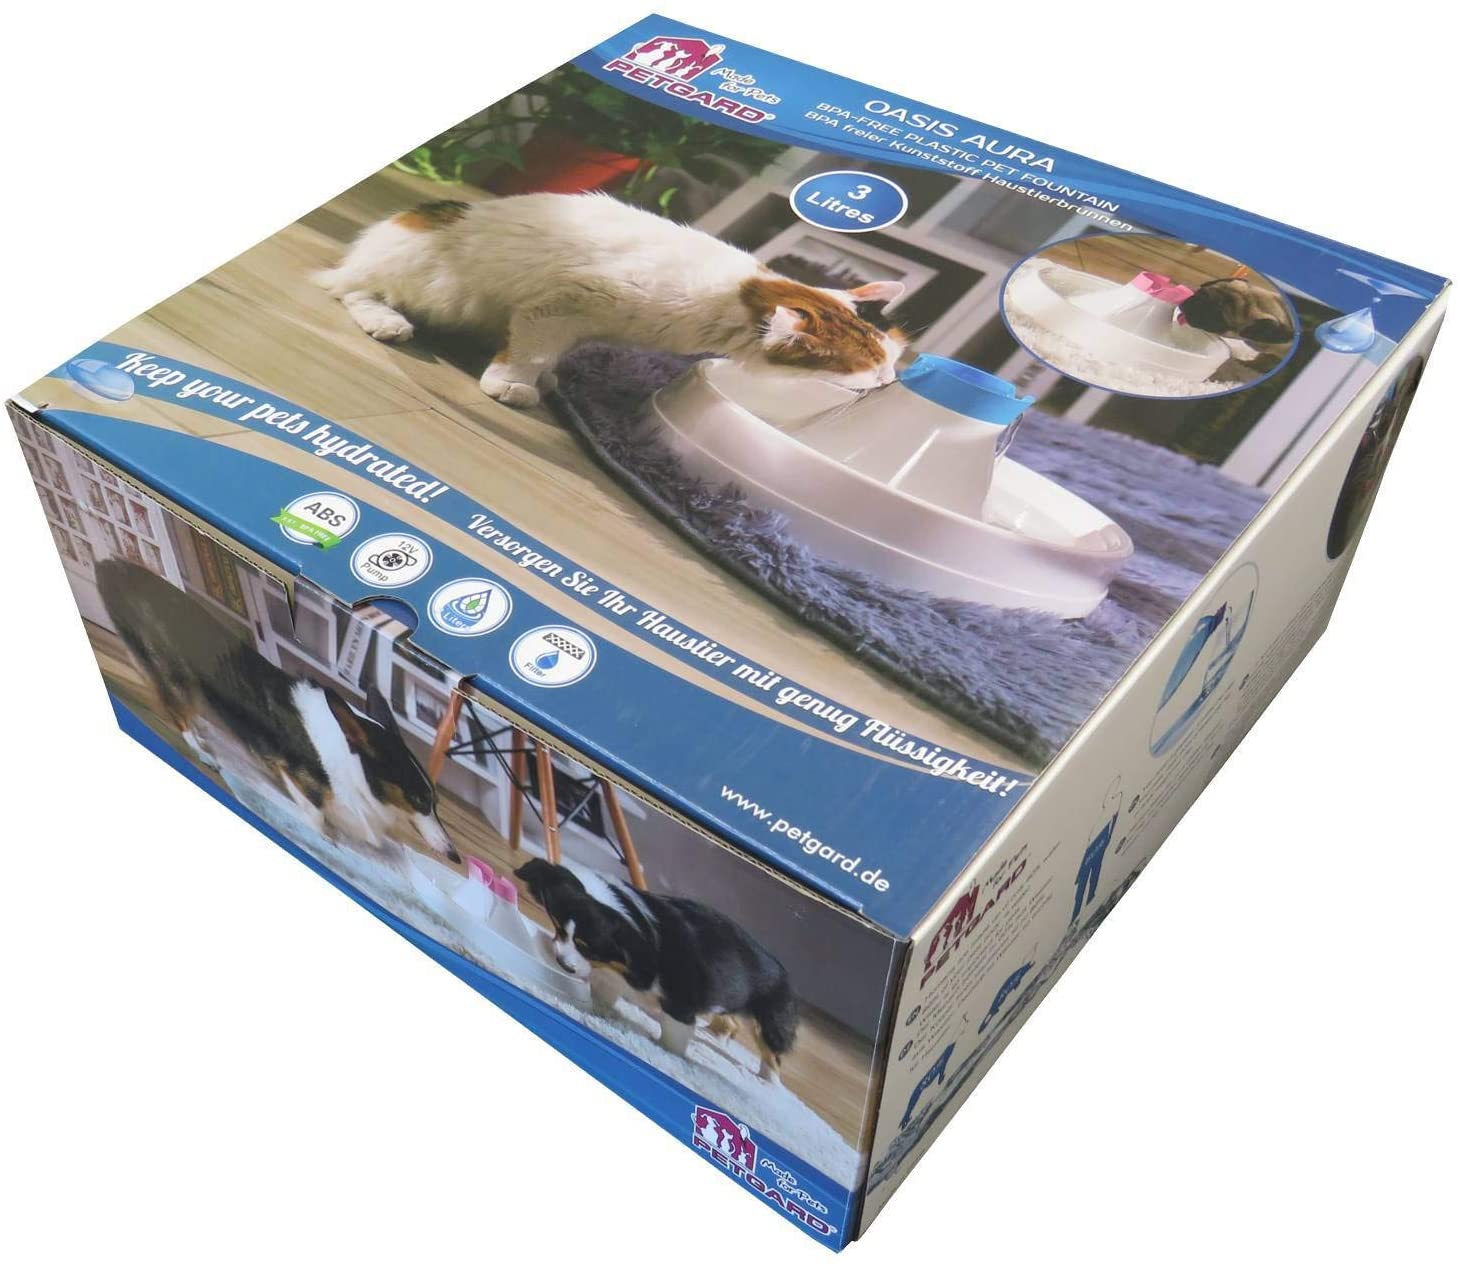  PETGARD Oasis Aura - Pack de Ahorro para Gatos y Perros, Color Blanco y Azul, Incluye Filtro de Repuesto 